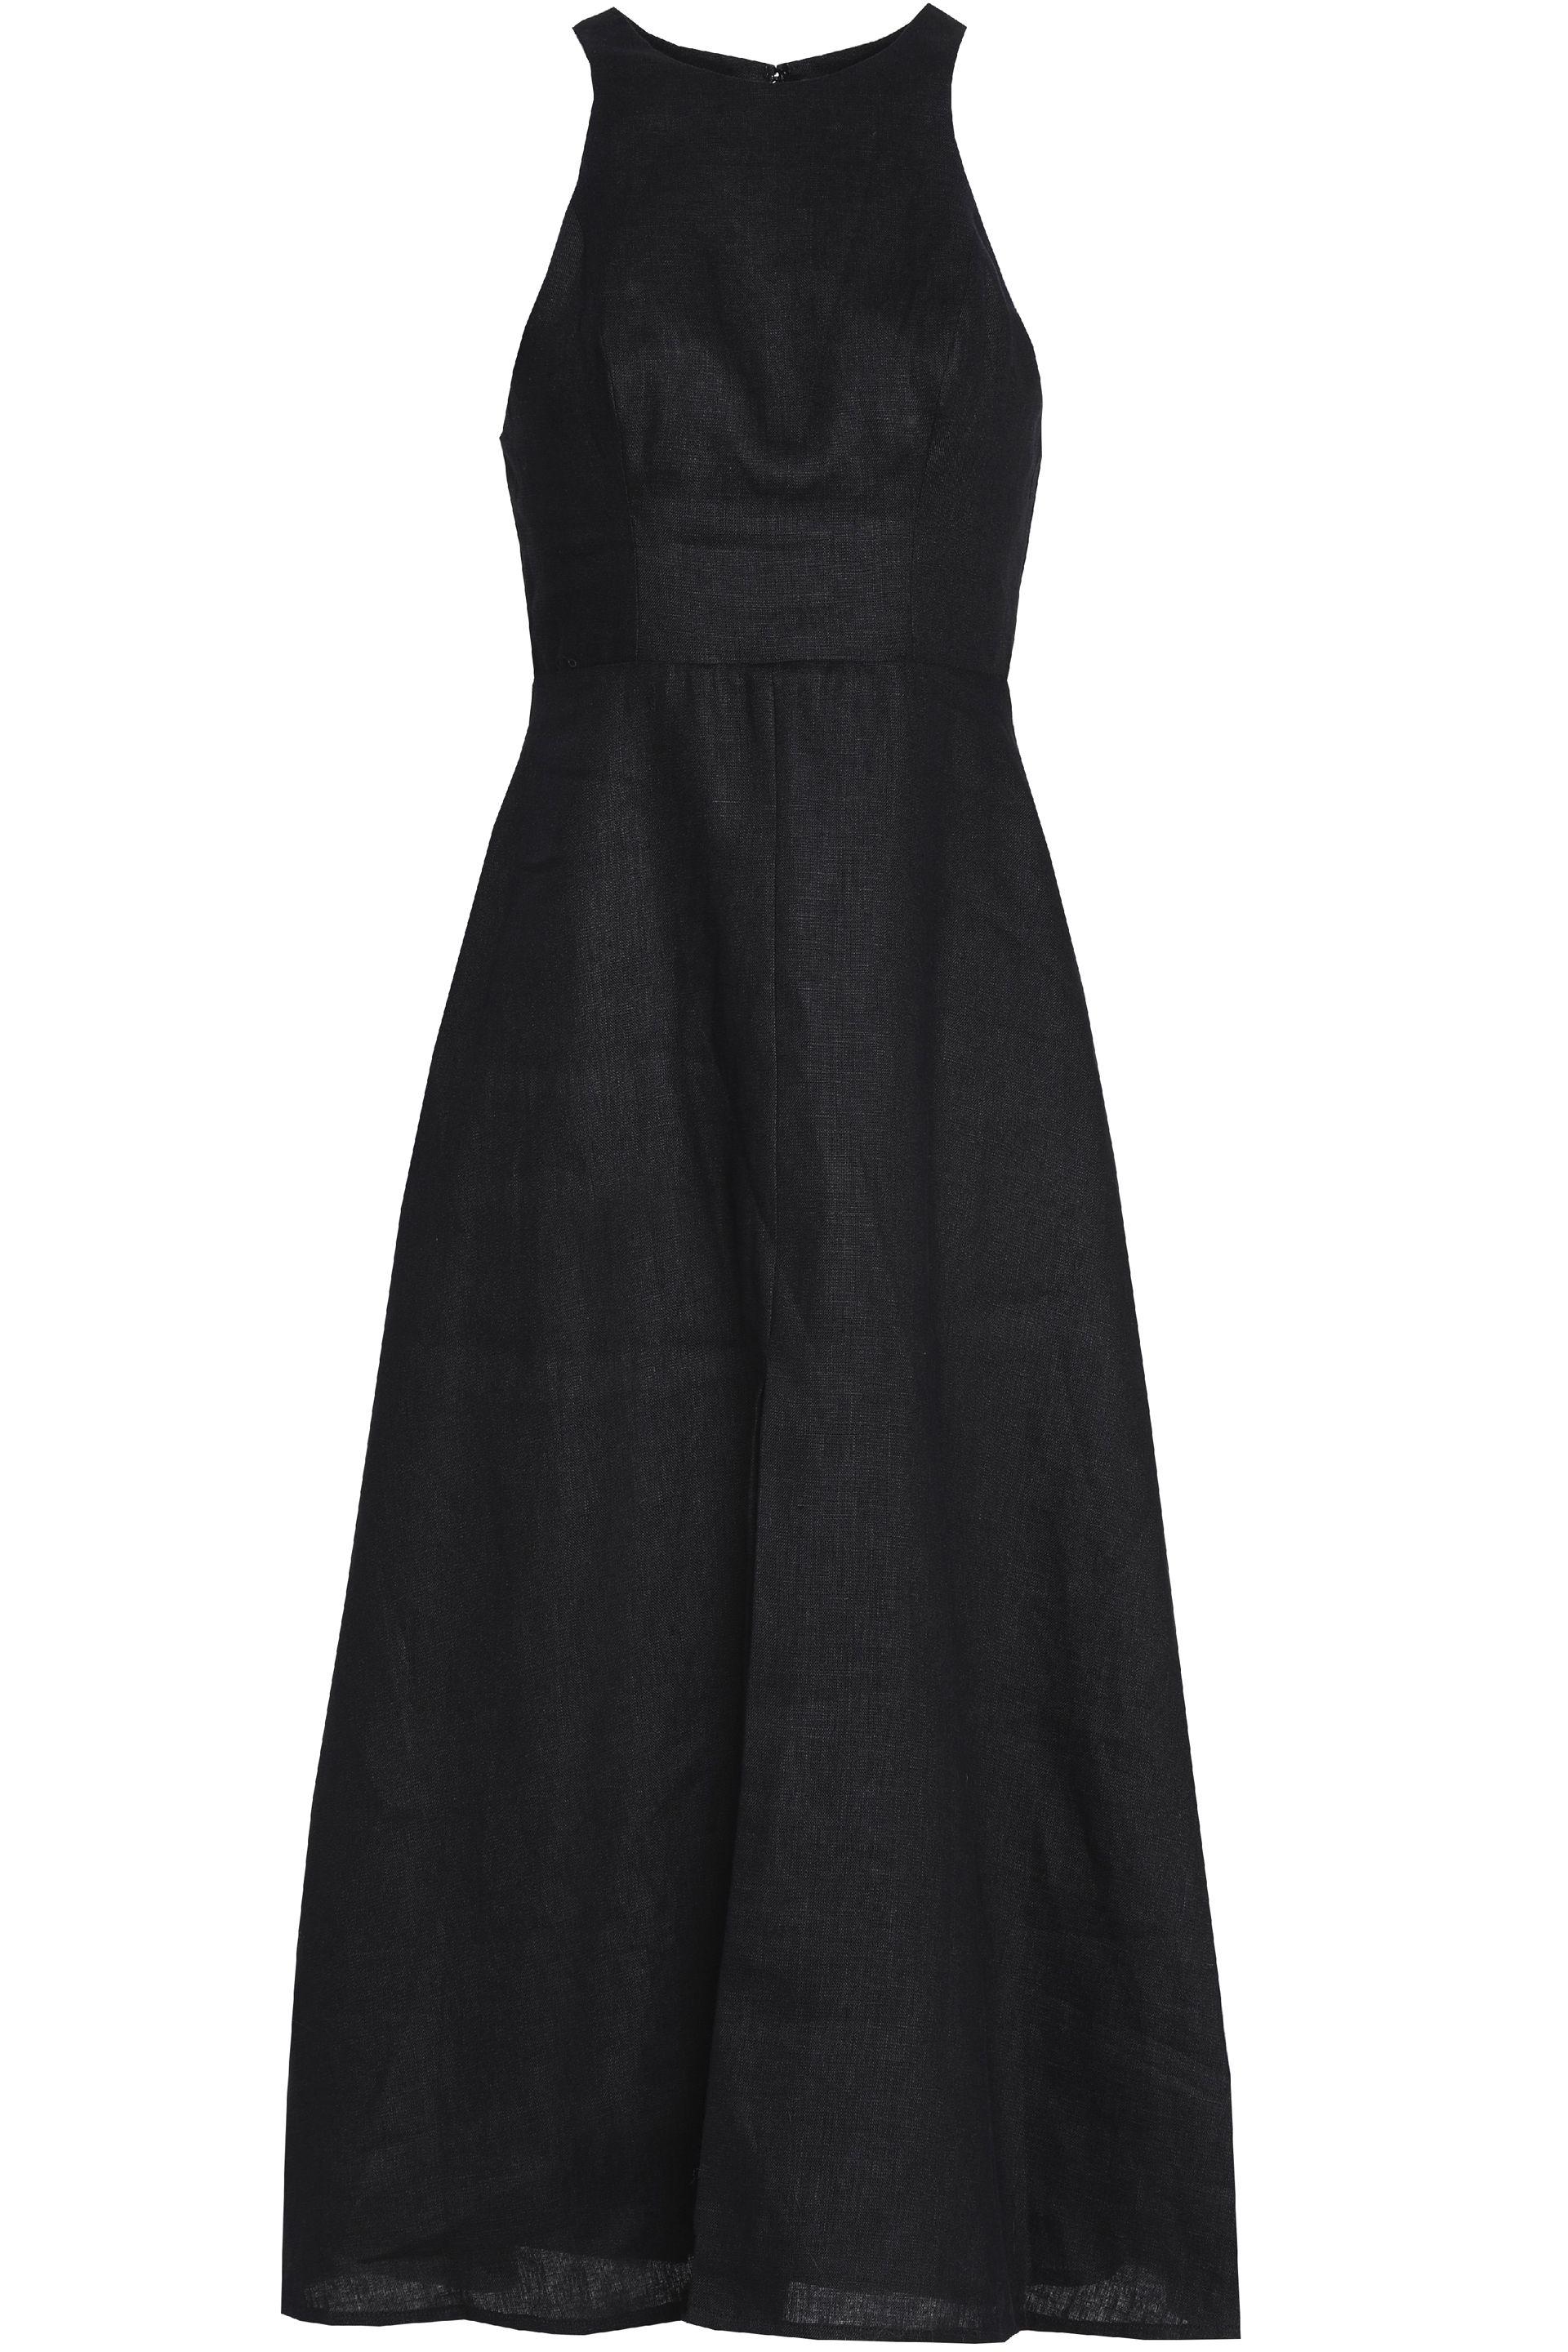 zimmermann black linen dress